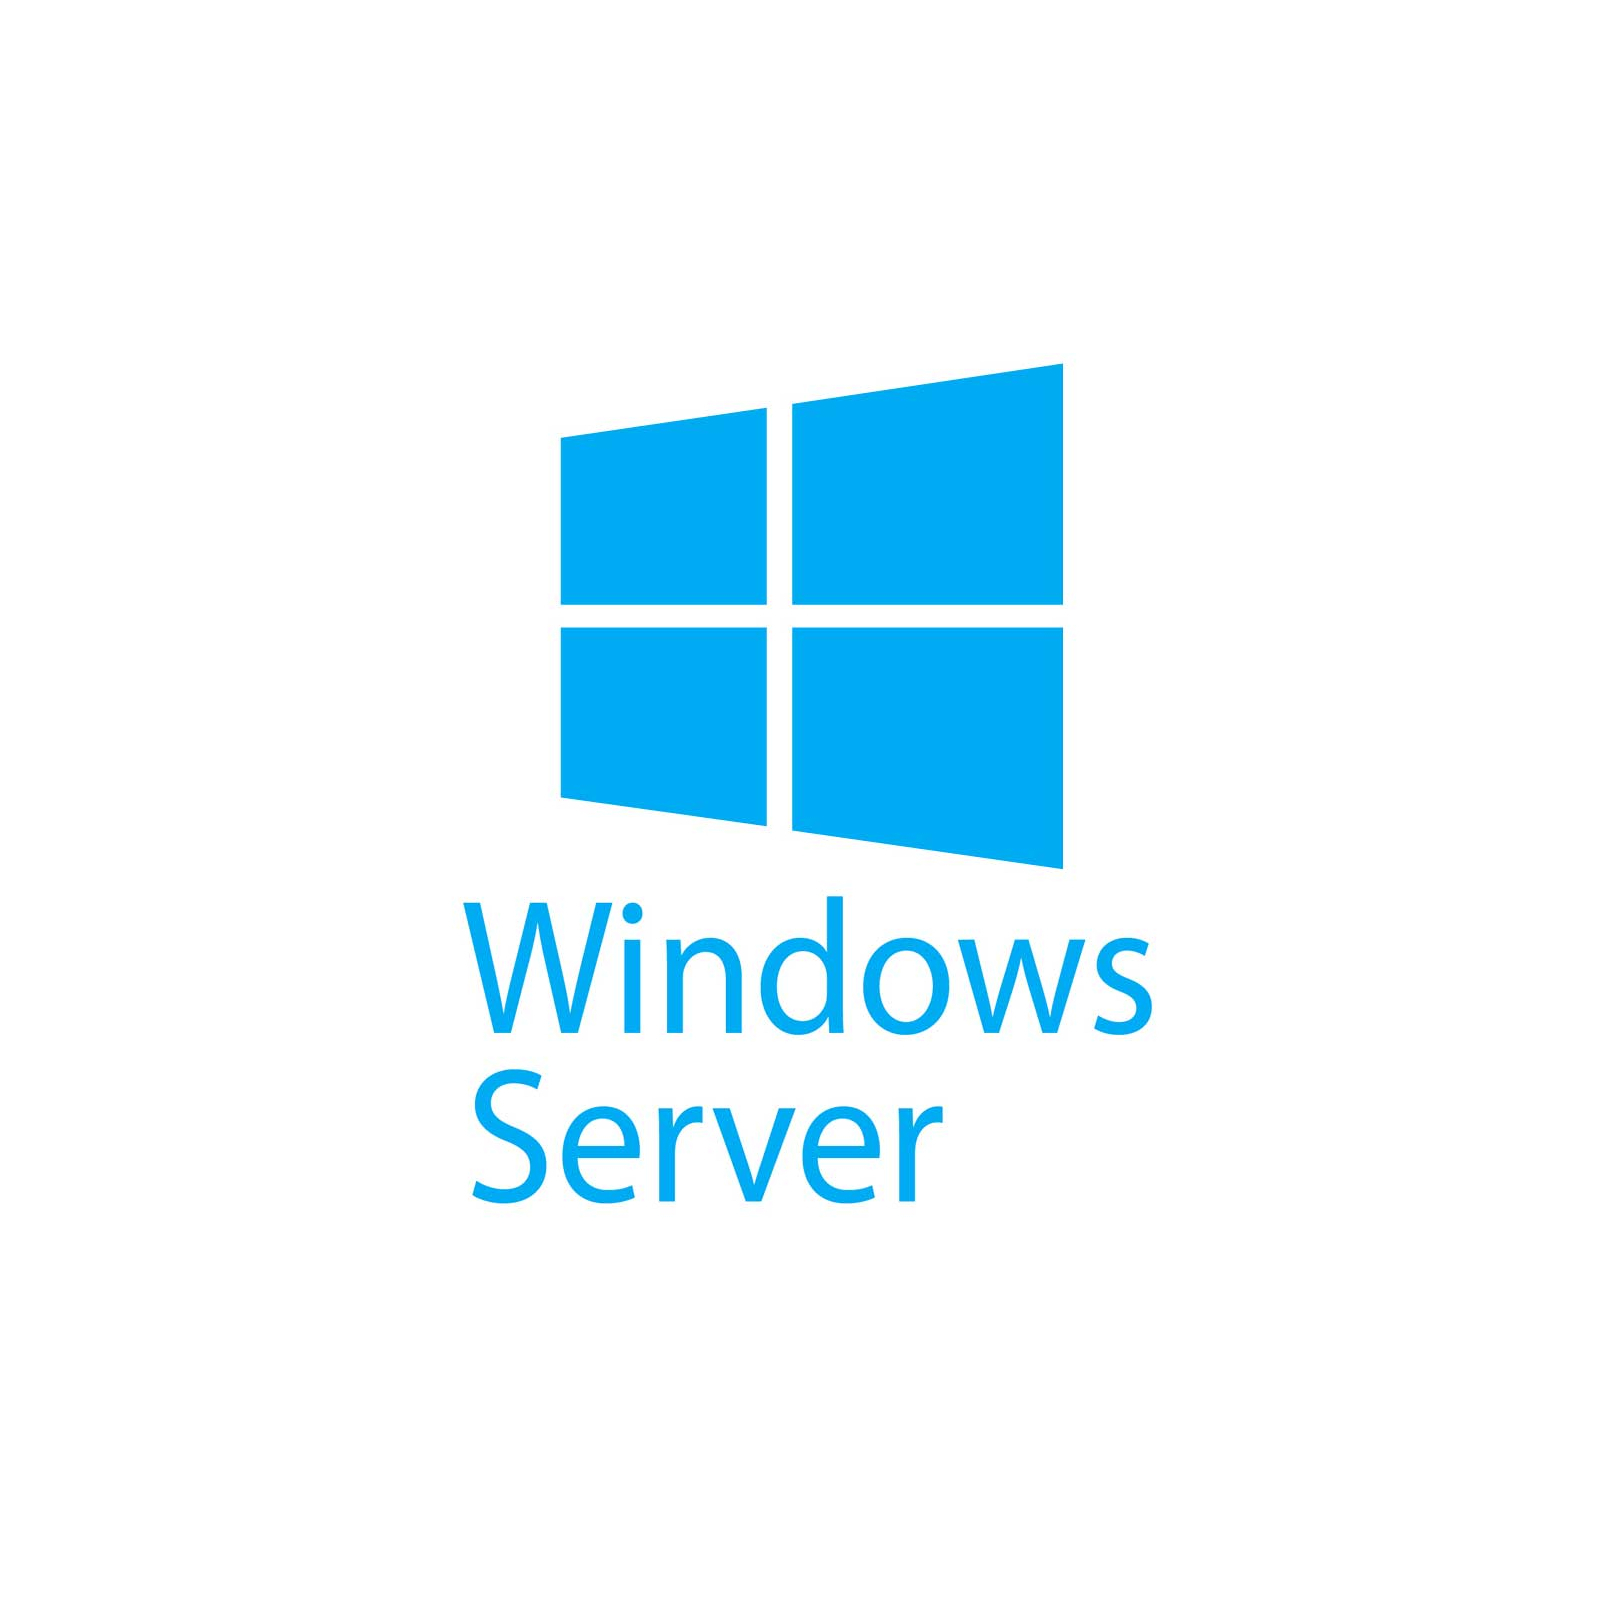 ПЗ для сервера IBM Windows Server Datacenter 2012 (2CPU) - Russian ROK (00Y6293)